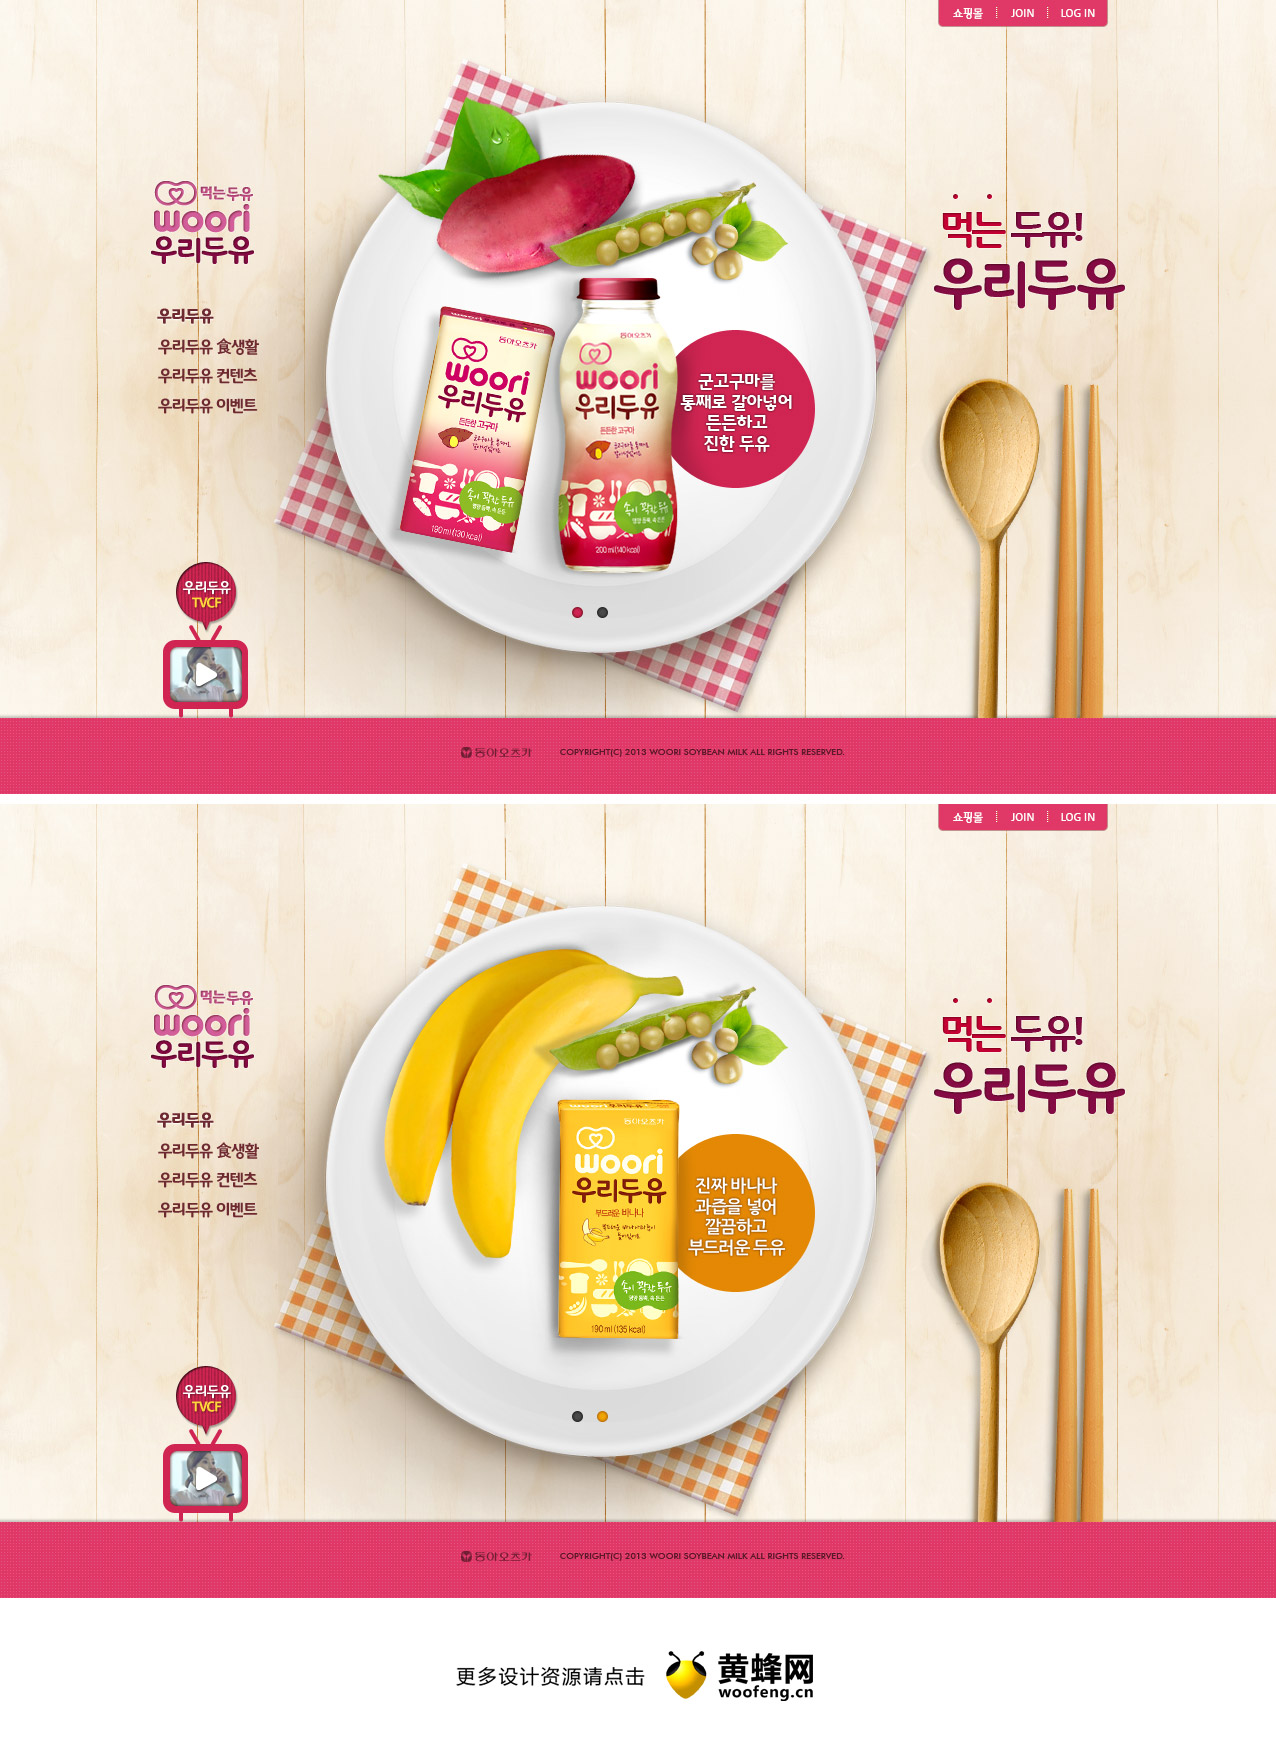 WOORI豆浆品牌网站，来源自黄蜂网https://woofeng.cn/